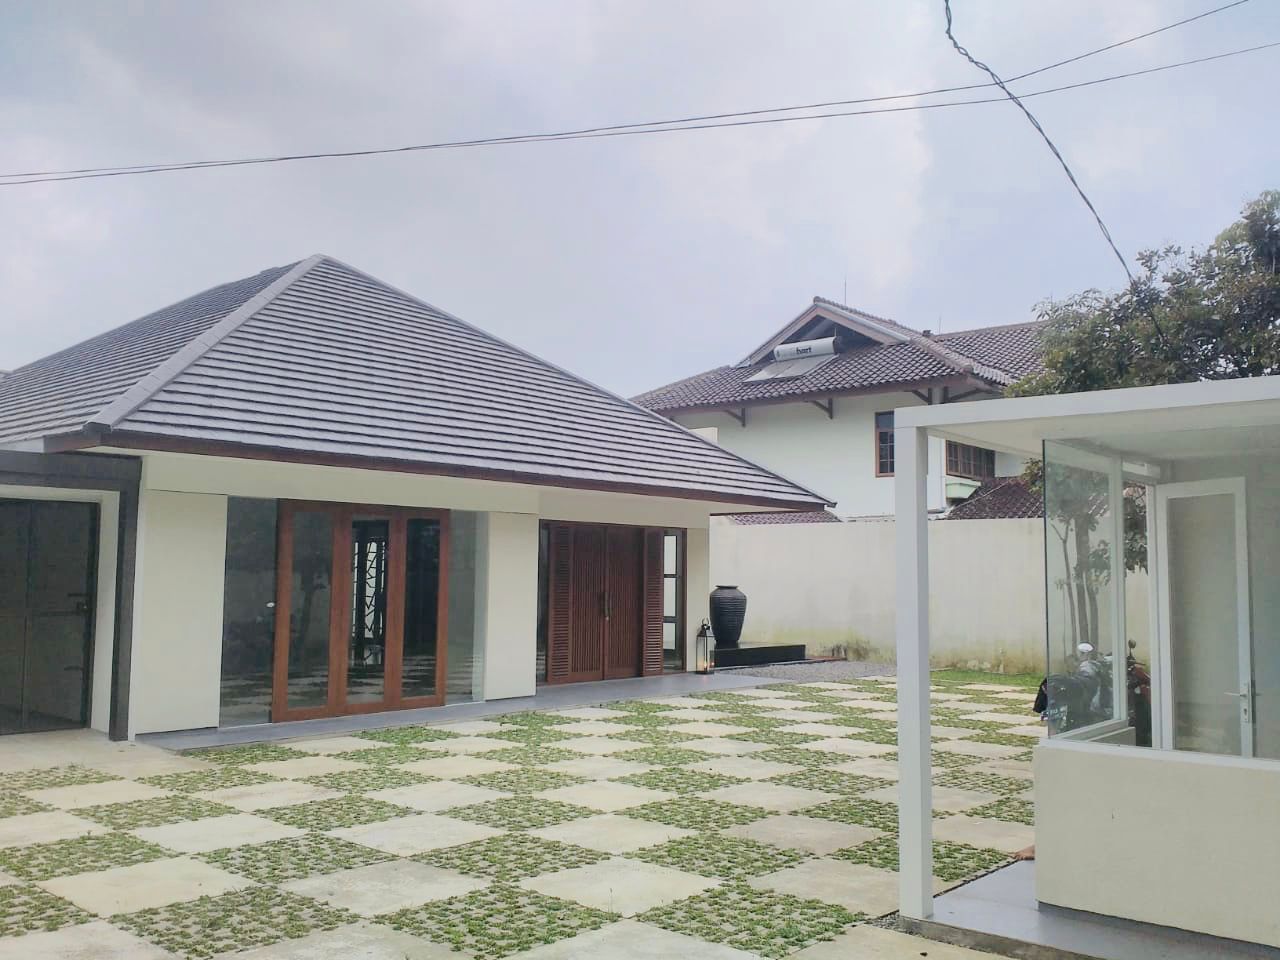 Jual : Rumah Mainroad Sayap Riau Martadinata Kondisi Bangunan Bagus sekali, halaman luas dengan halaman belakang